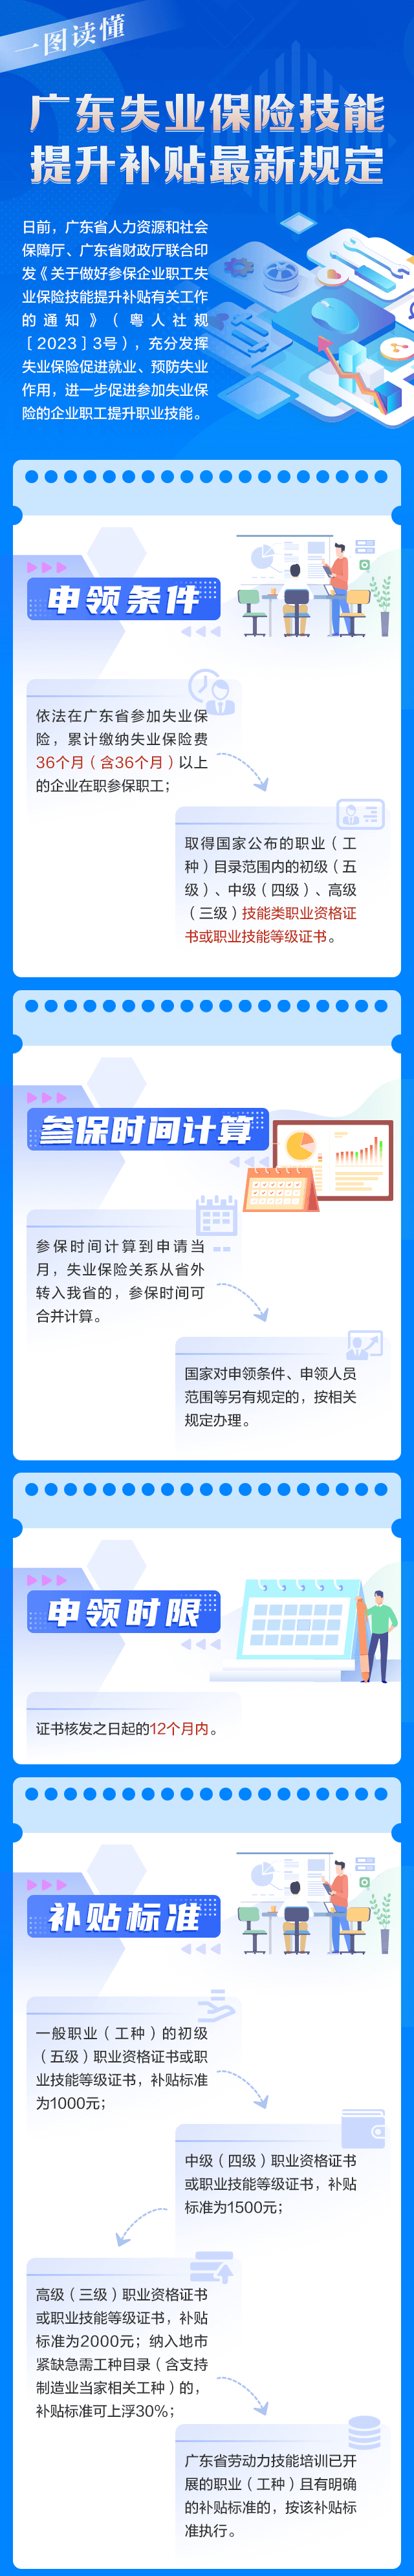 广州失业保险技能提升补贴最新规定